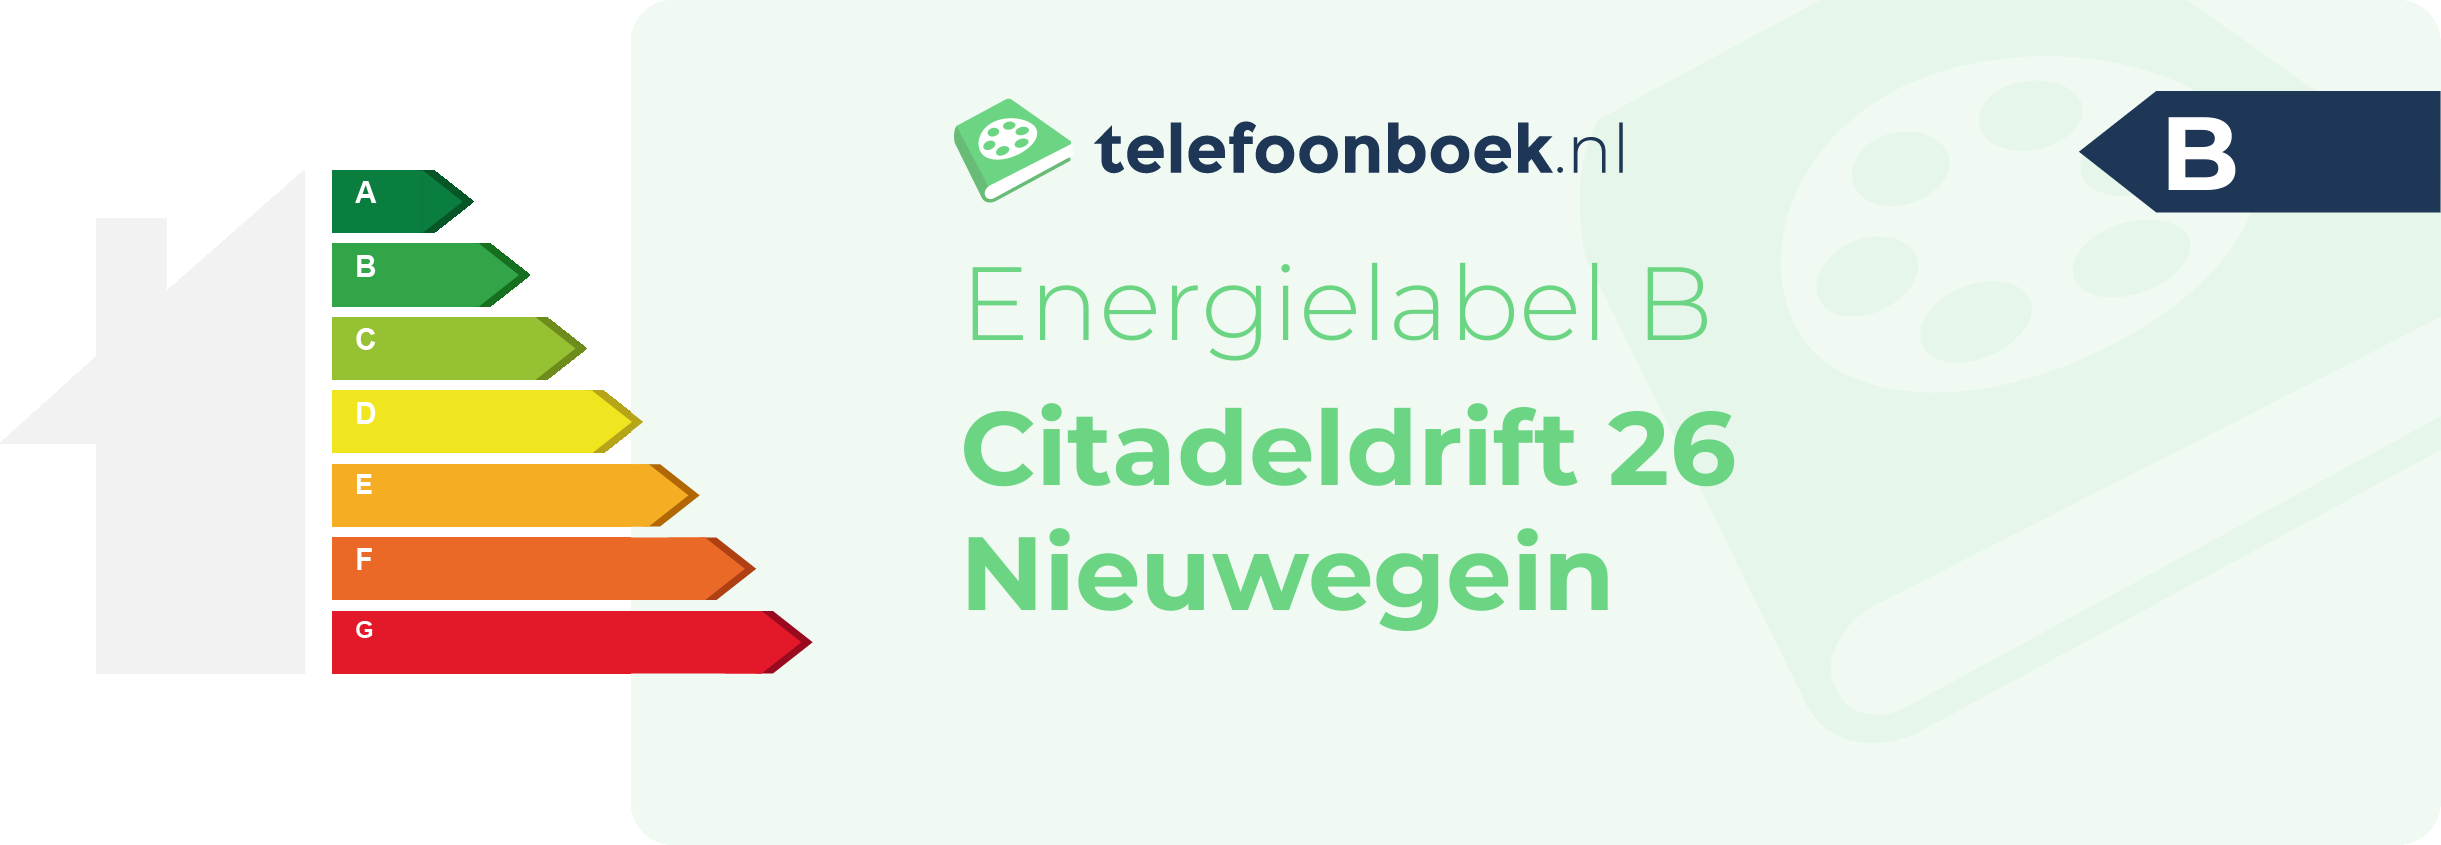 Energielabel Citadeldrift 26 Nieuwegein